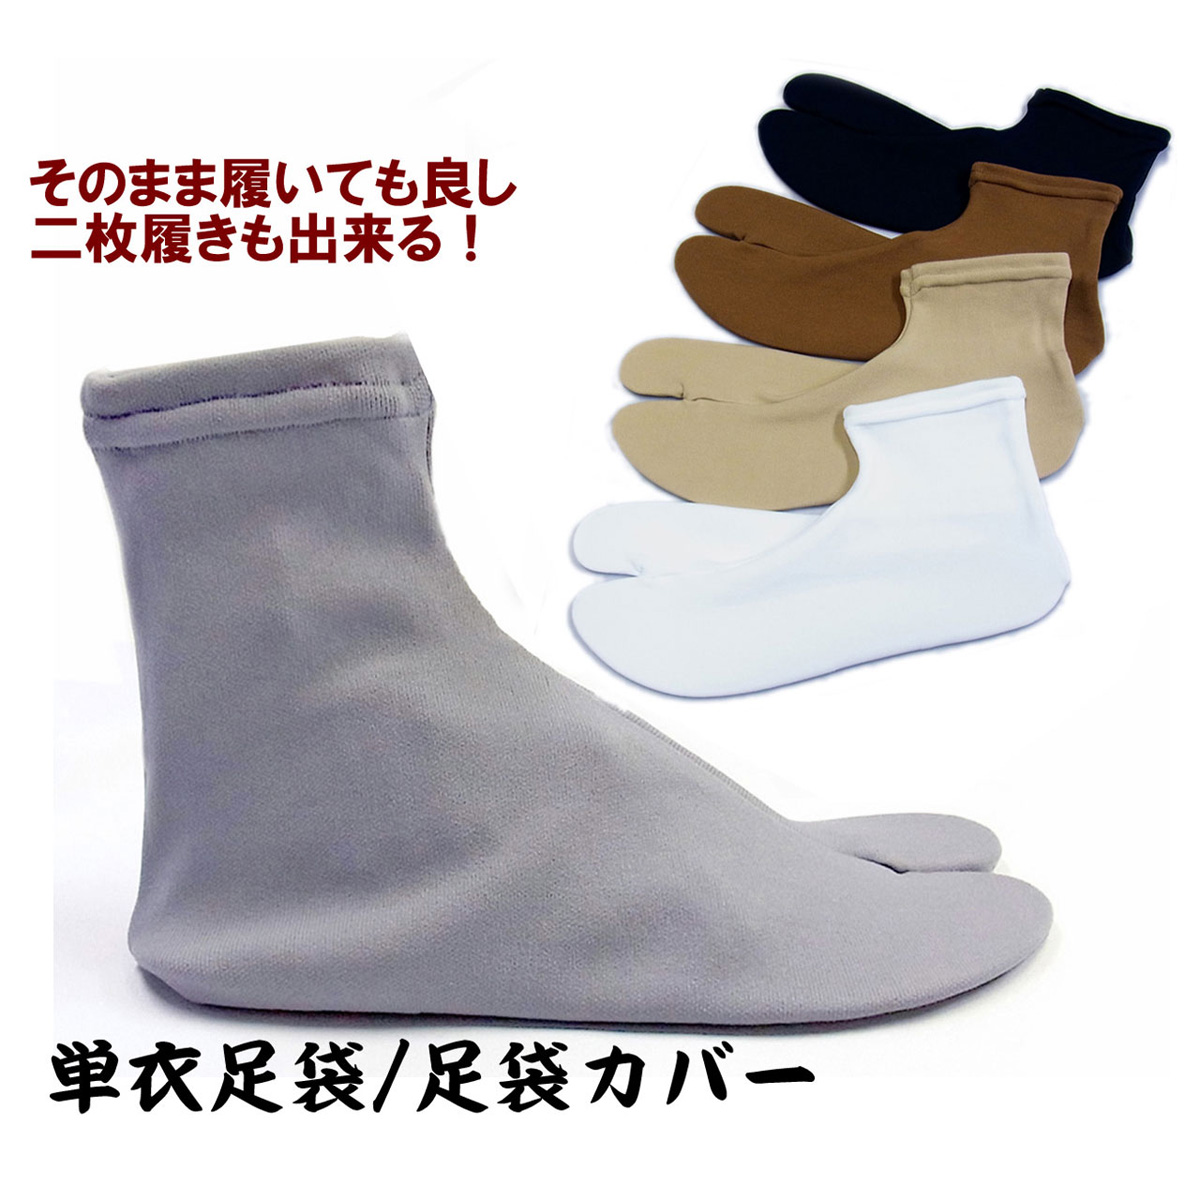 足袋 メンズ ストレッチ 足袋カバー 日本製 (7966)